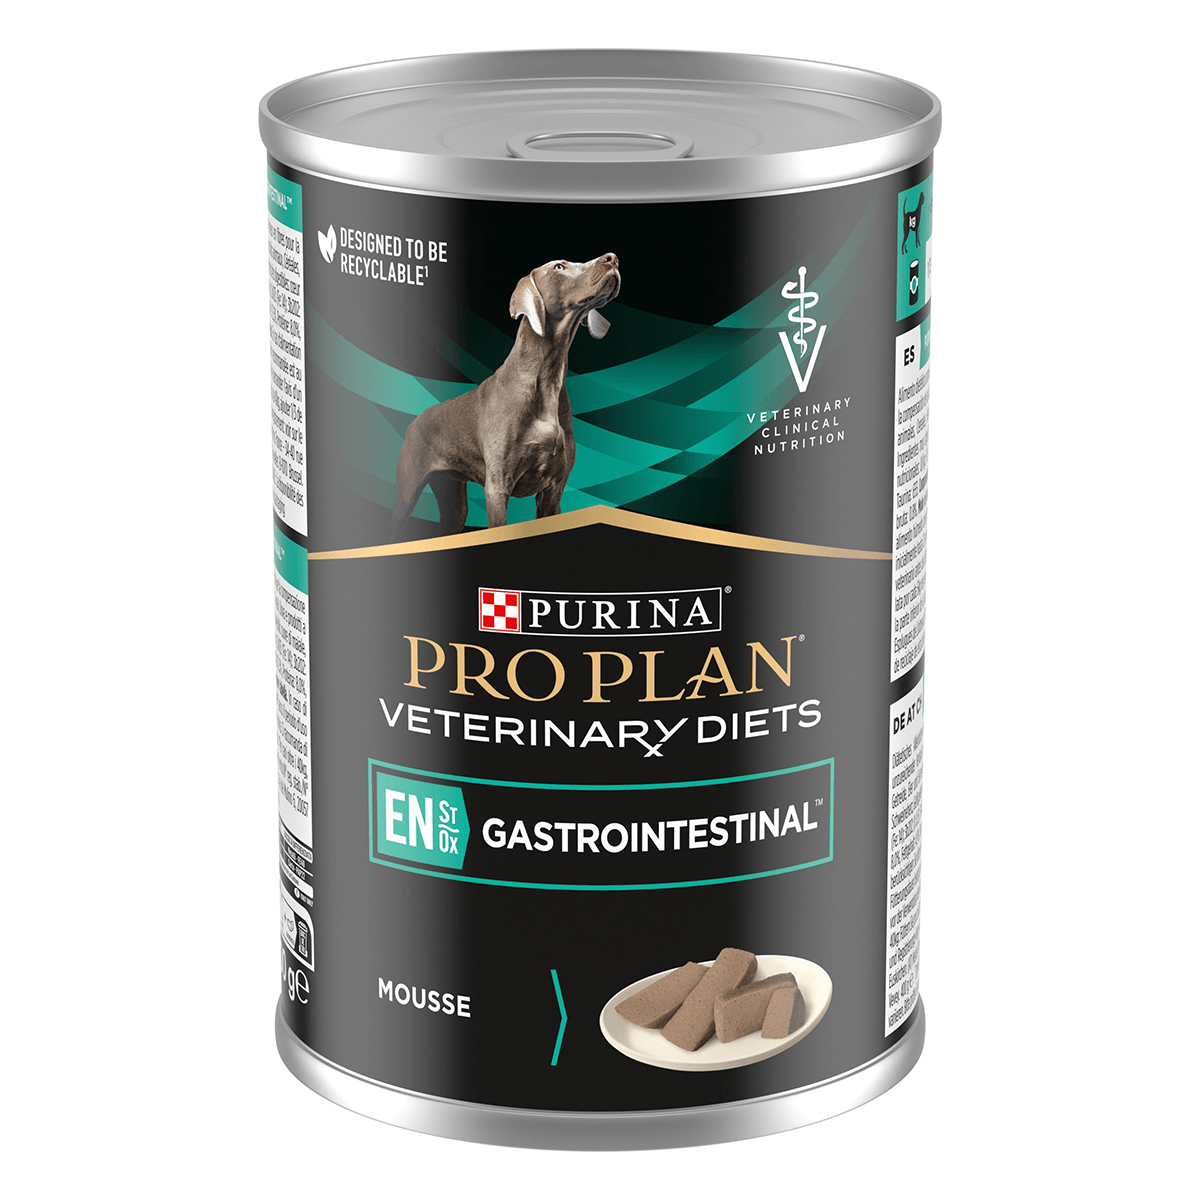 PURINA Pro Plan Veterinary Diets Gastrointestinal Mousse, dietă veterinară câini, conservă hrană umedă, afecțiuni digestive, 400g (conserva)